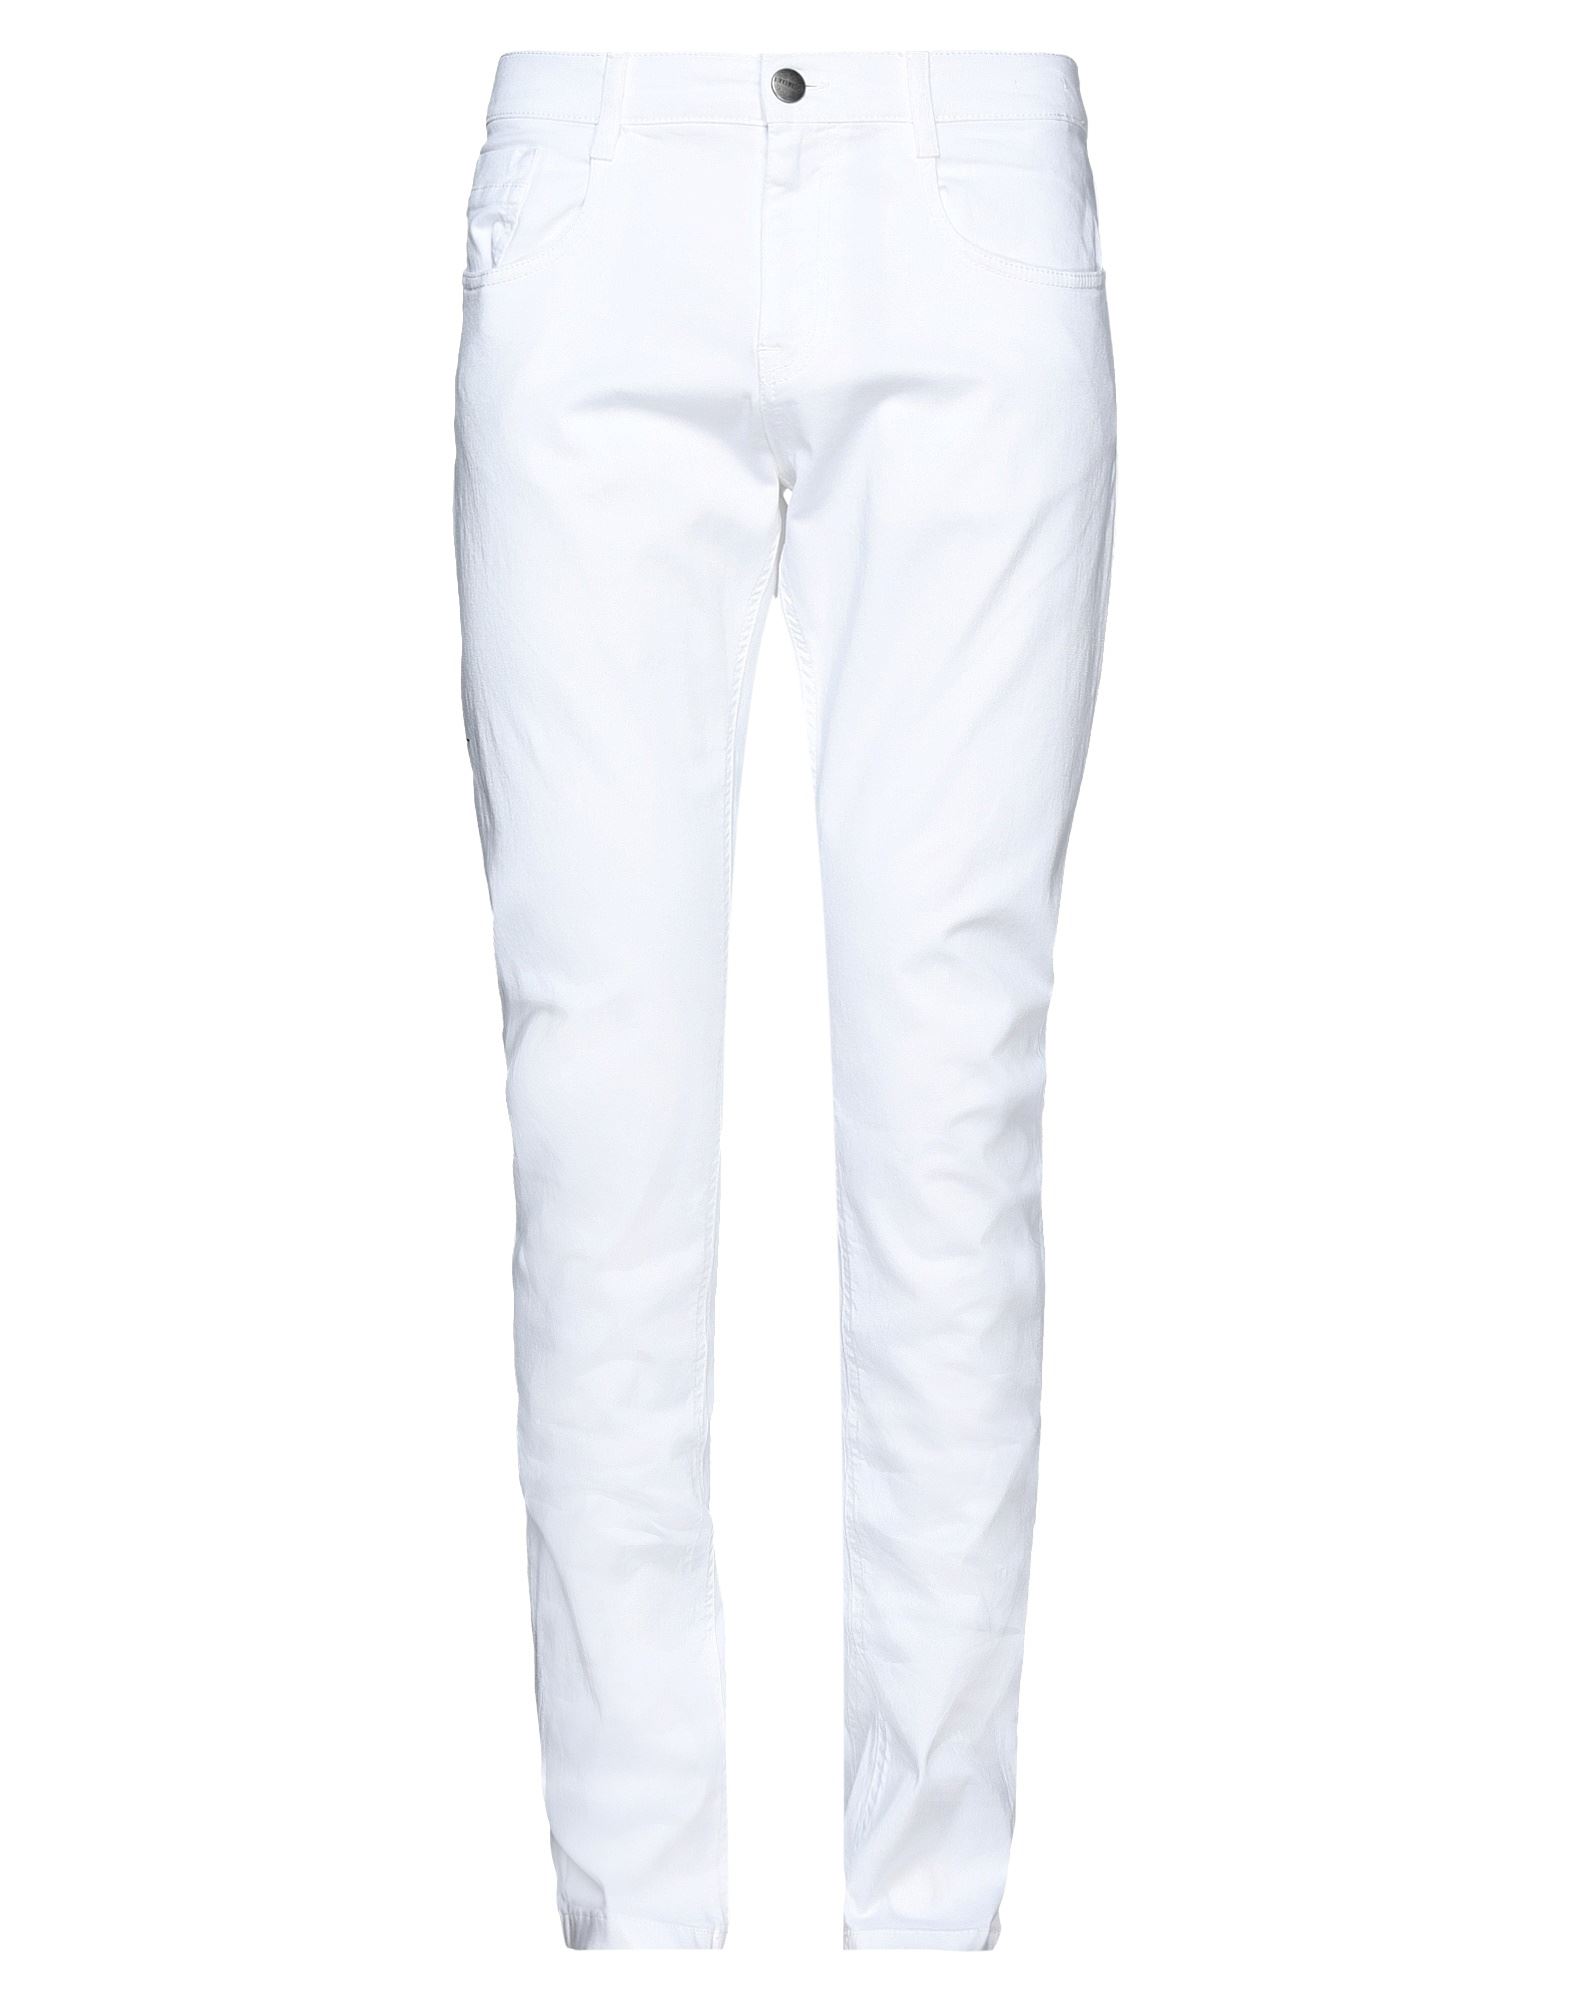 Bikkembergs Pants In White